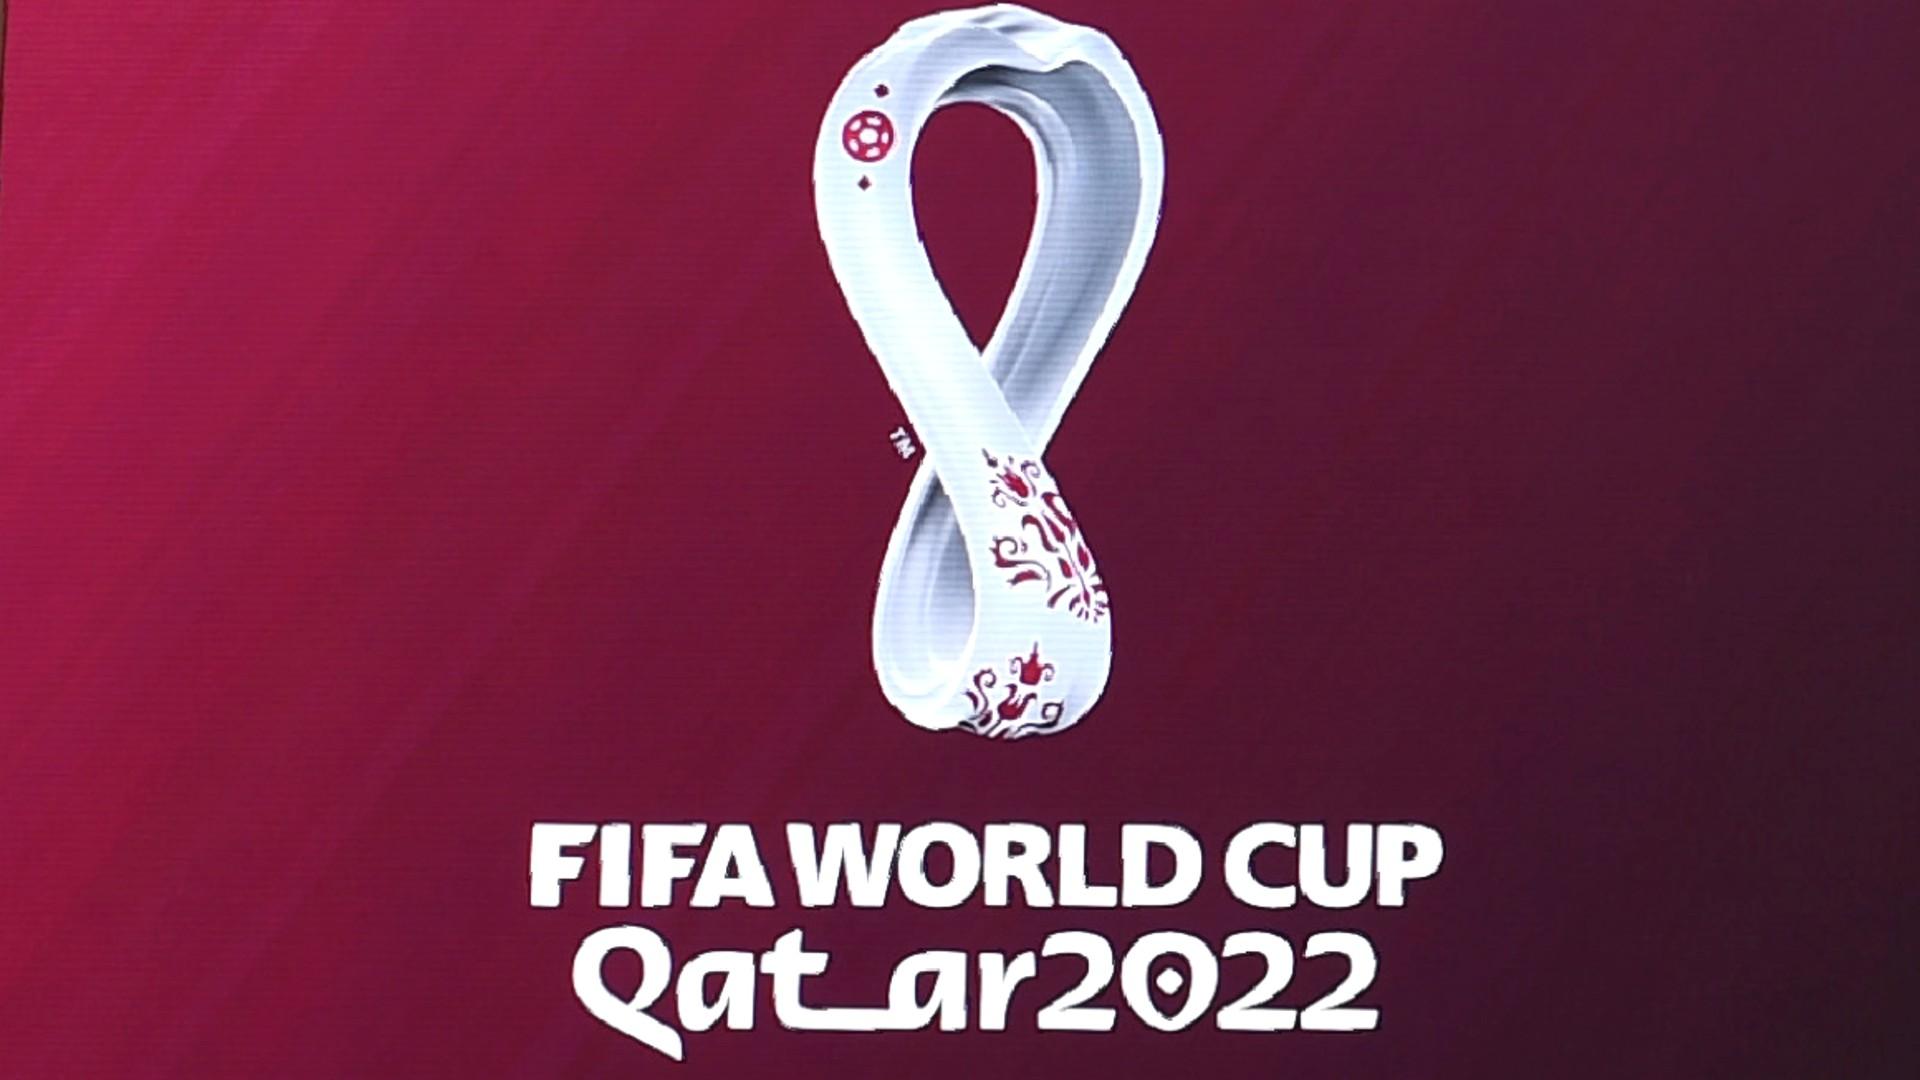  Lo que cuestan los boletos para Qatar 2022 en su 2da etapa de venta